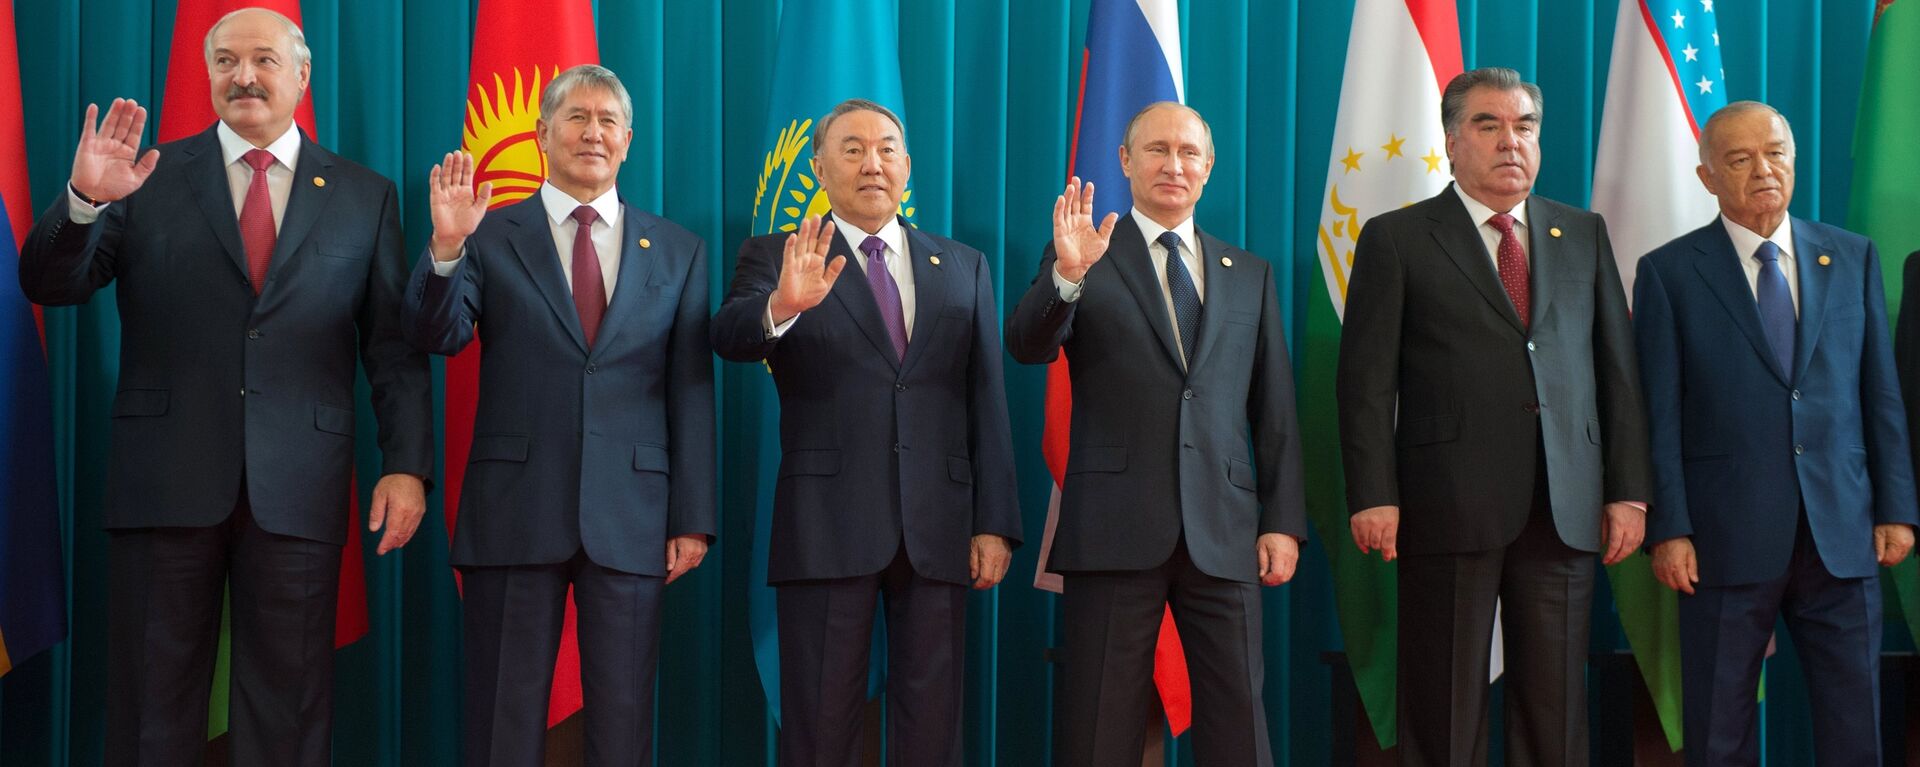 დსთ–ის წევრ სახელმწიფოთა ლიდერების შეხვედრა - Sputnik საქართველო, 1920, 09.12.2015